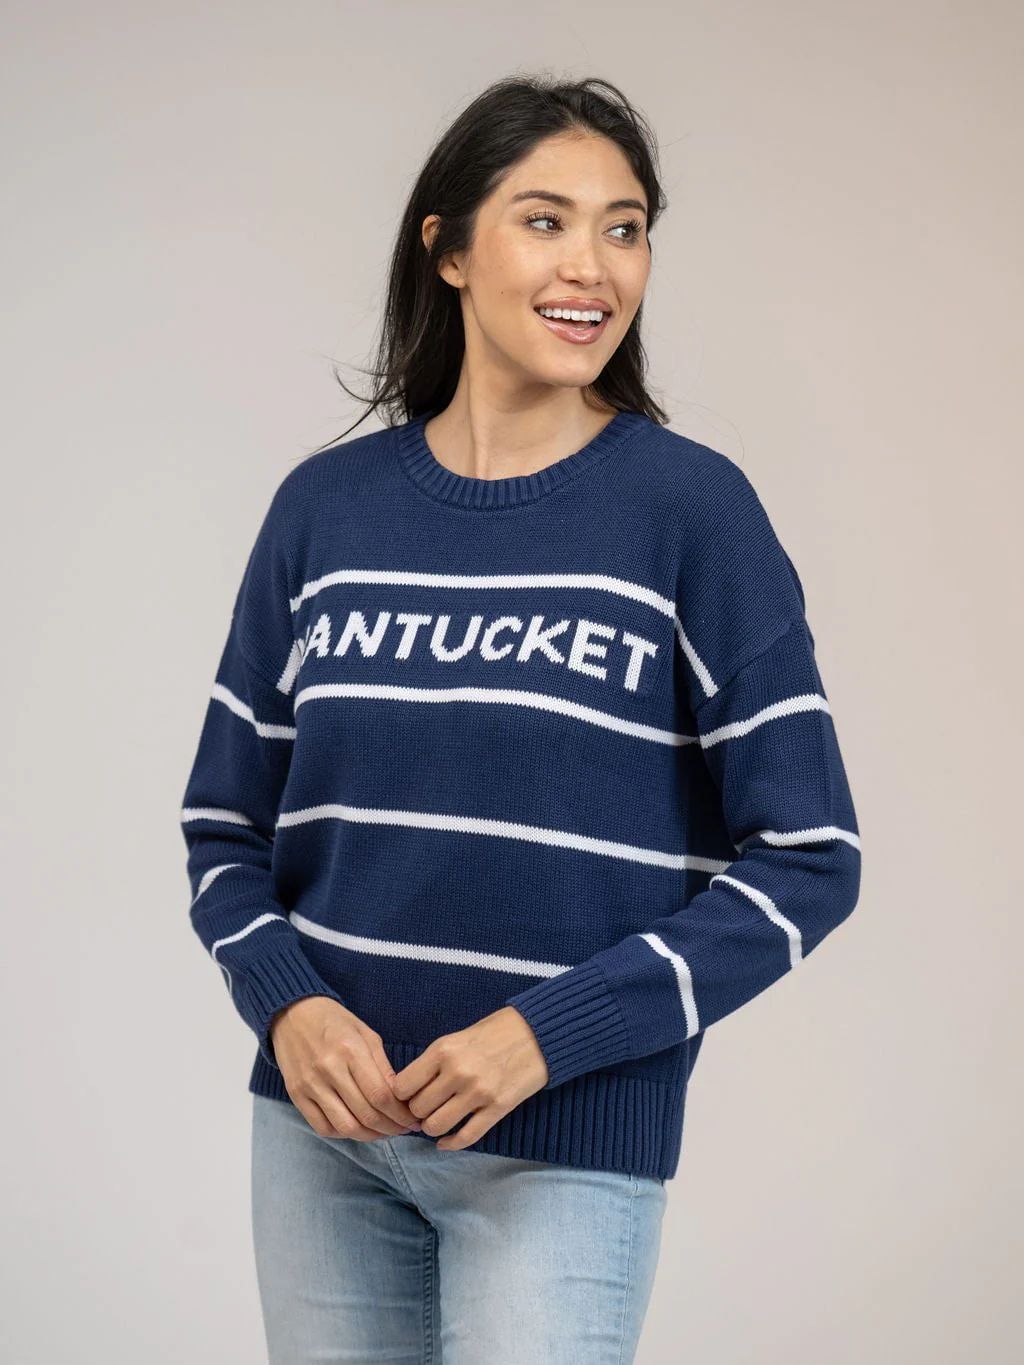 Nantucket Sweater in Navy Stripe | Beau & Ro